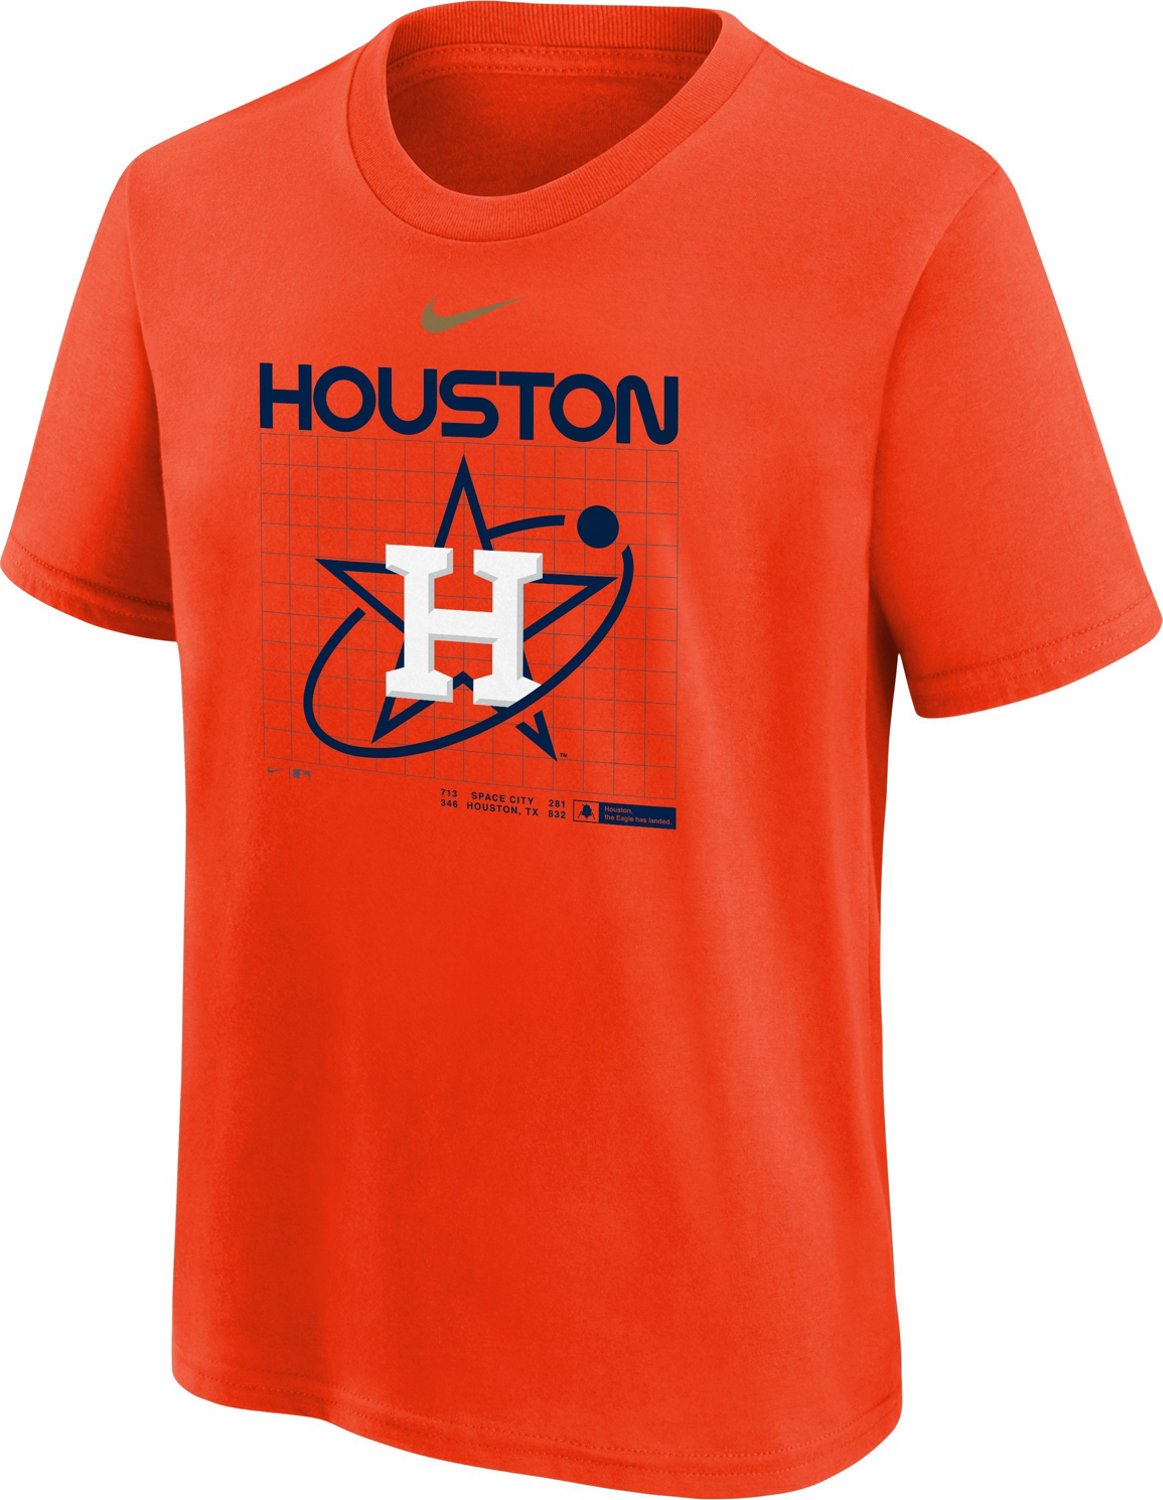 Men's New Era White Houston Astros Historical Championship T-Shirt